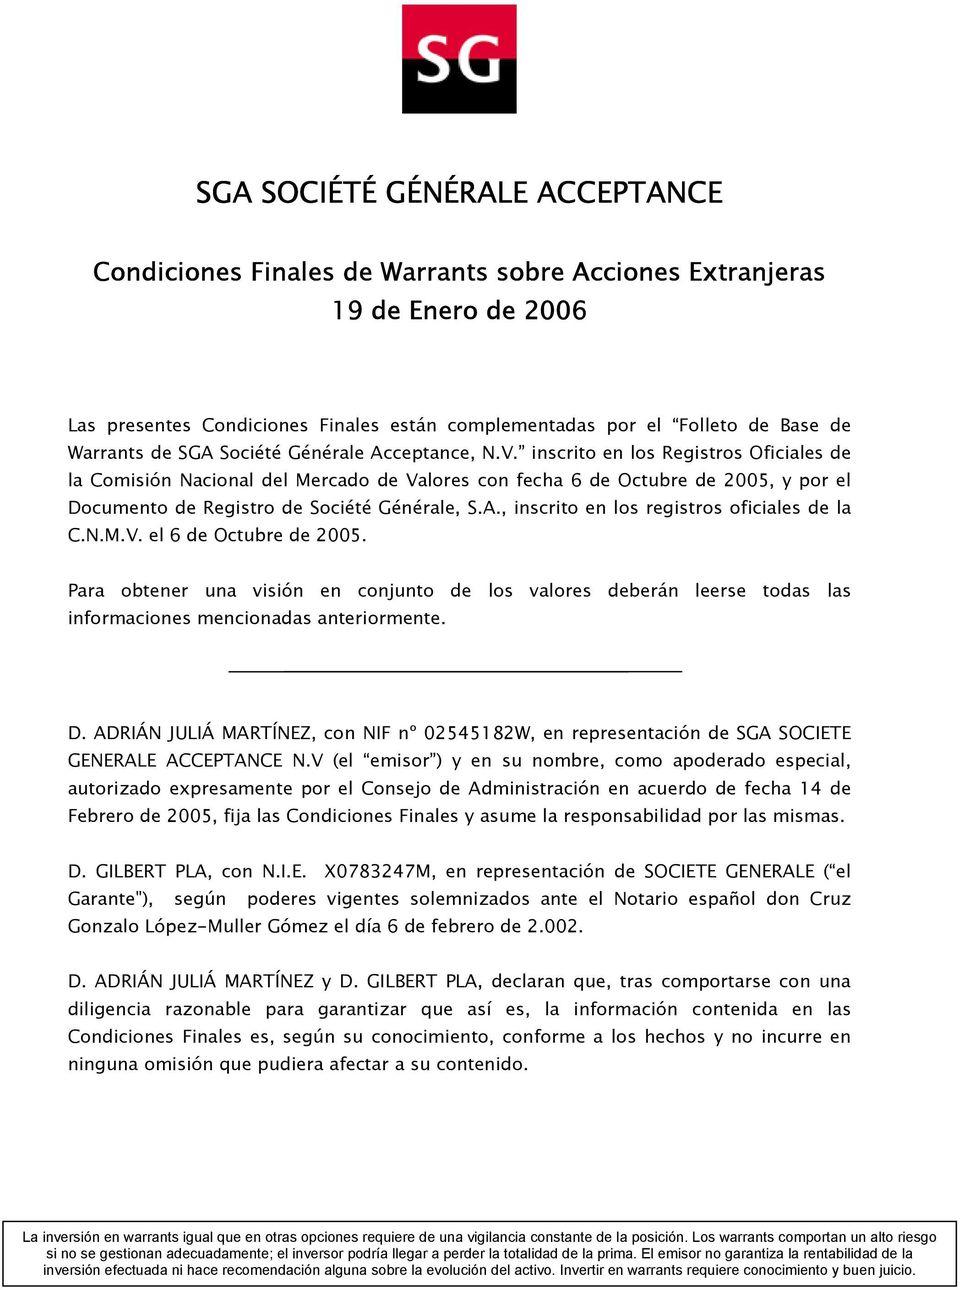 inscrito en los Registros Oficiales de la Comisión Nacional del Valores con fecha 6 de Octubre de 2005, y por el Documento de Registro de Société Générale, S.A.